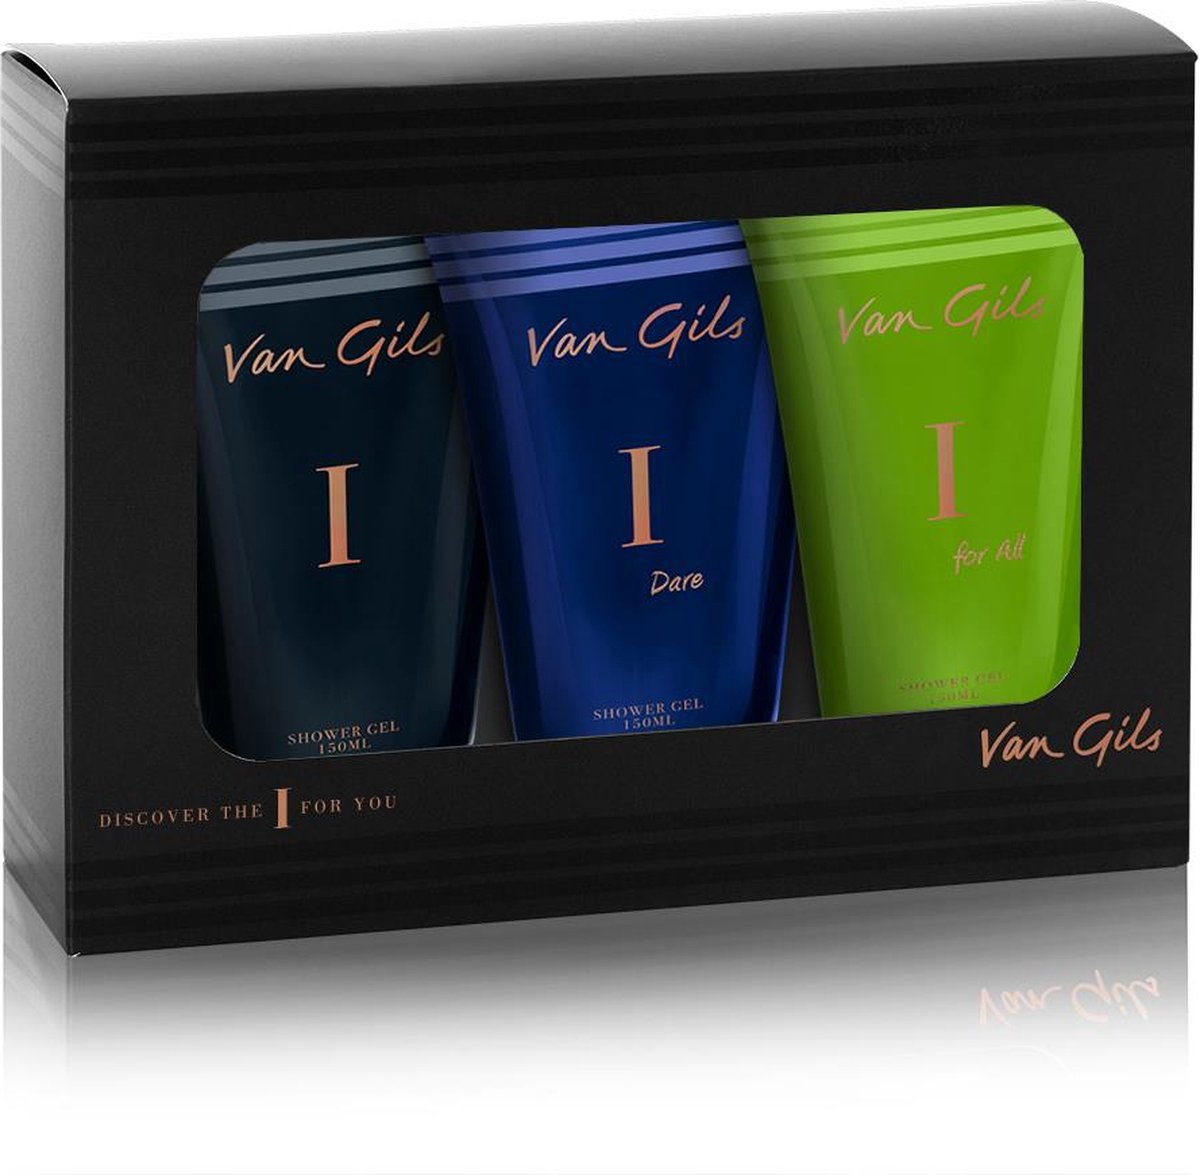 Van Gils I - geschenkset Shower gels 3x - Van Gils I / Van Gils I Dare / Van Gils I for All